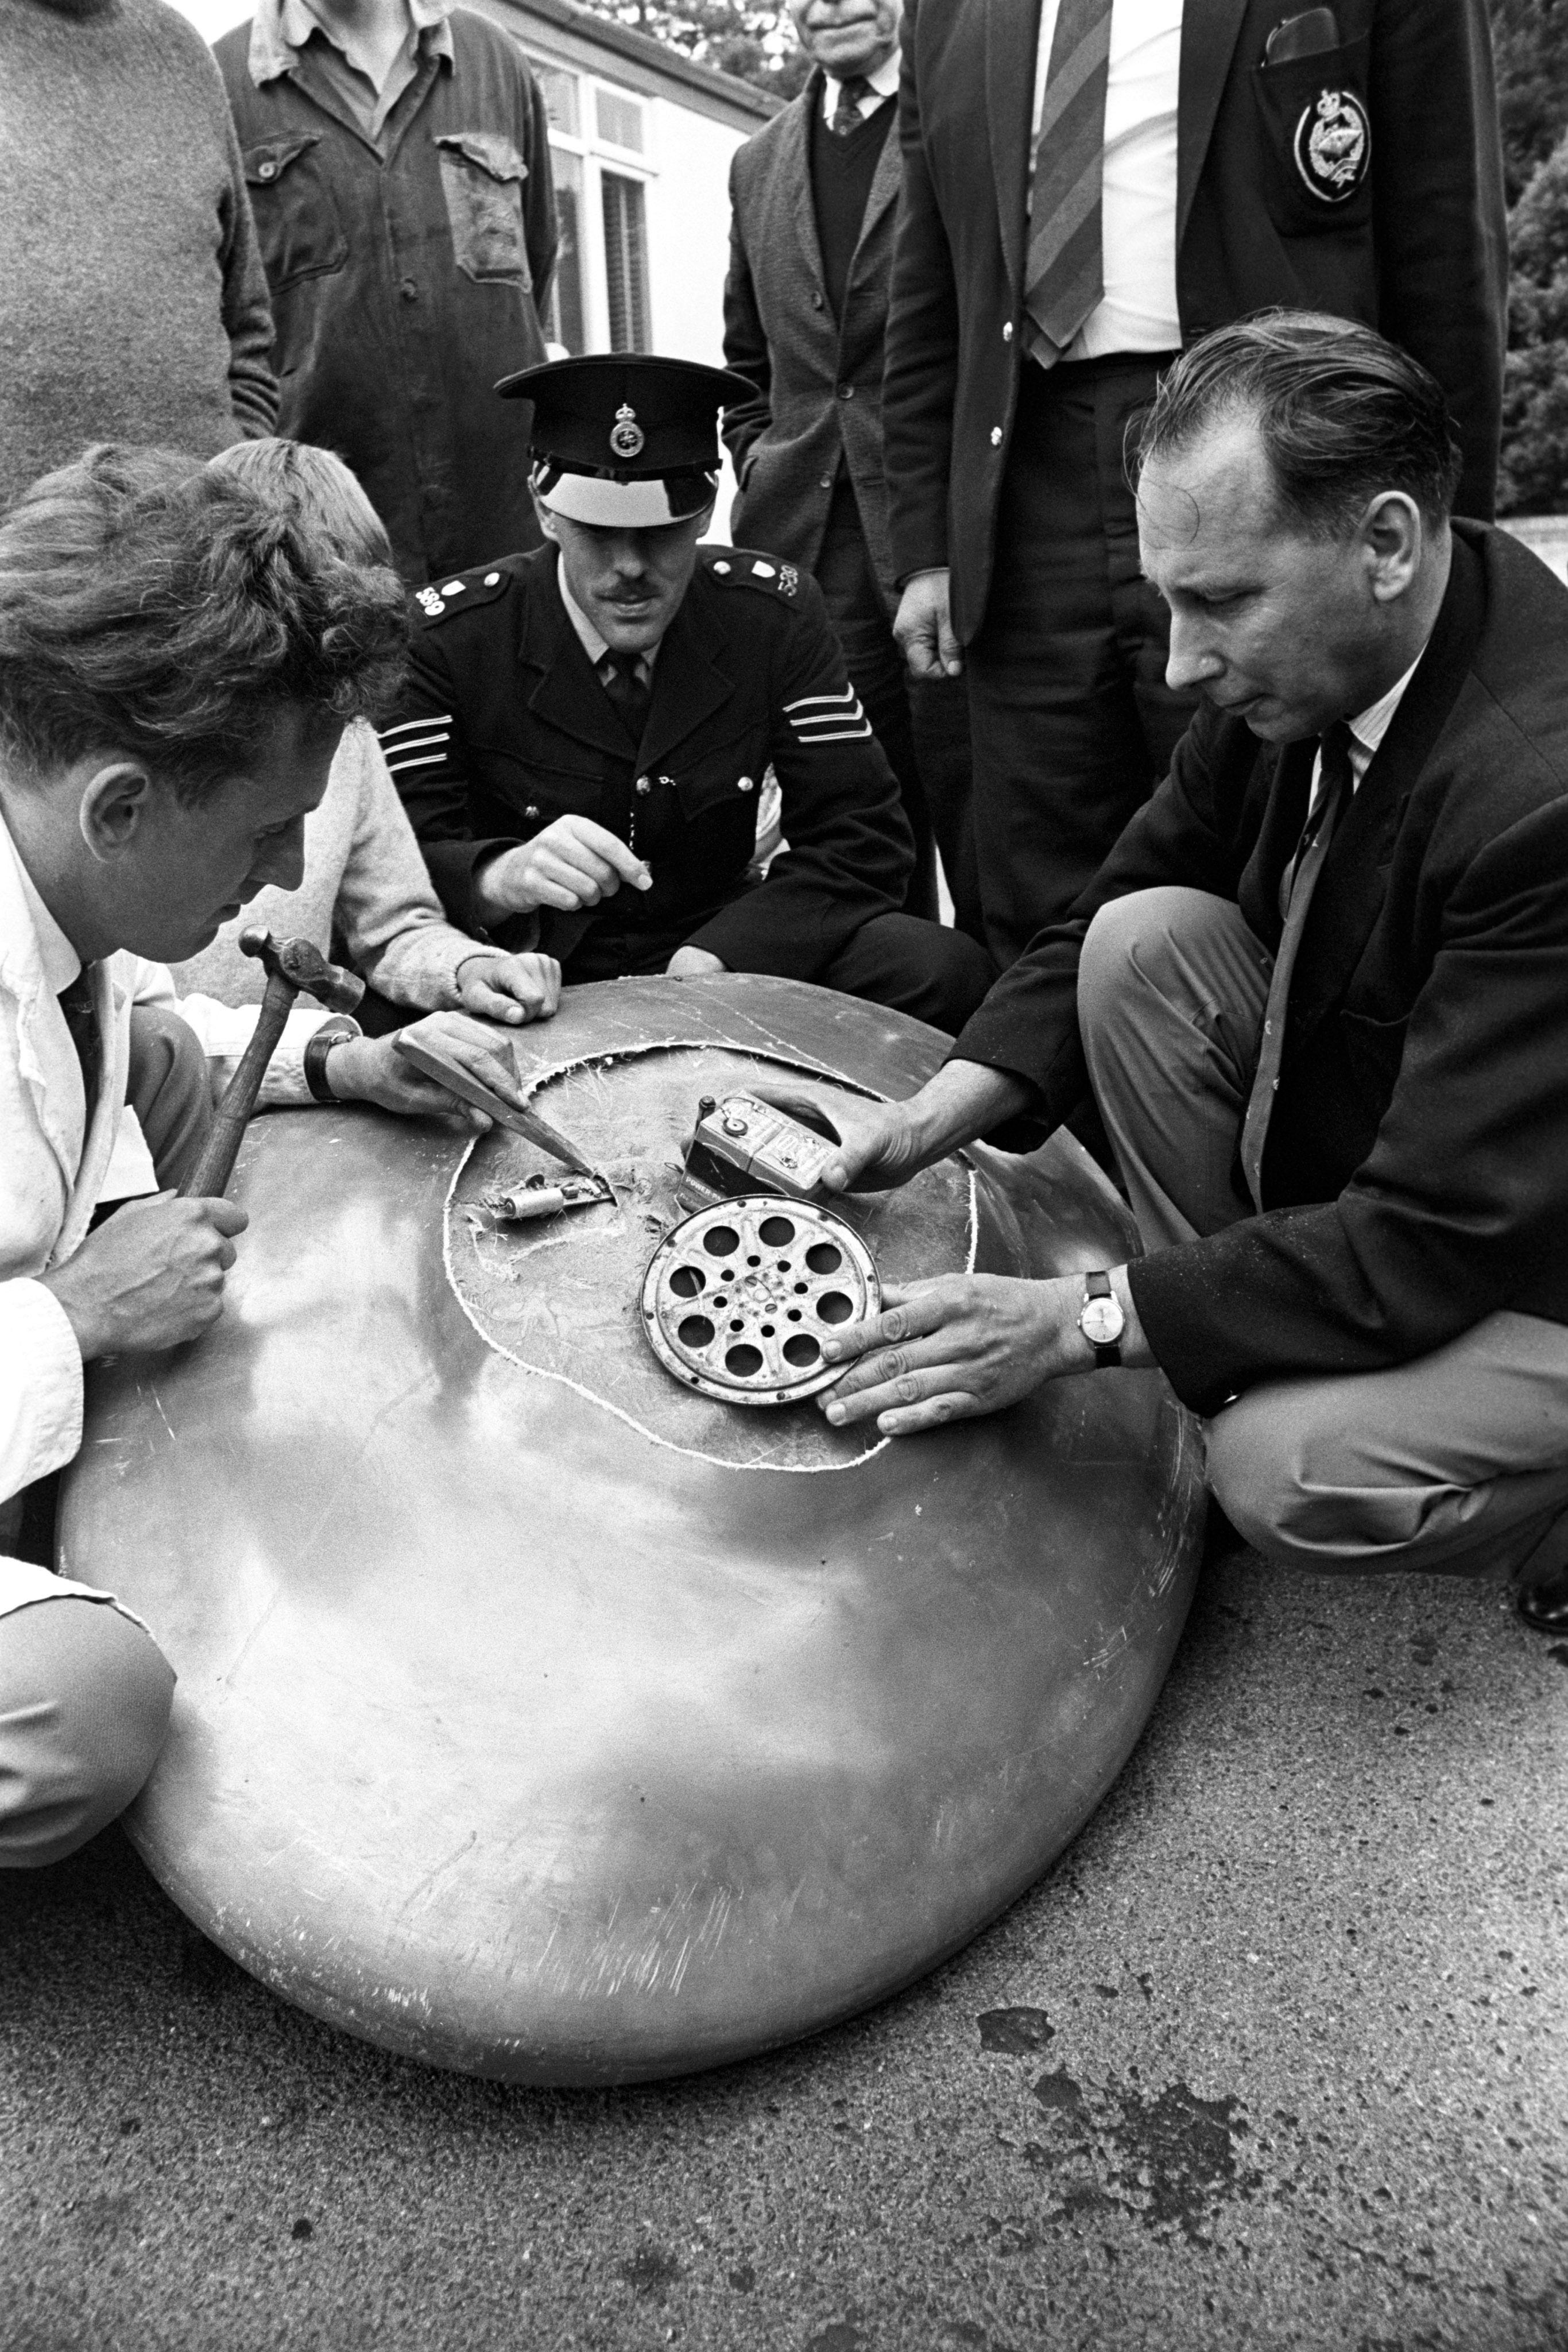 تفكيك جسم يشبه الأطباق الطائرة عثر على 5 منه في أنحاء مختلفة من المملكة المتحدة في 4 سبتمبر/أيلول 1967